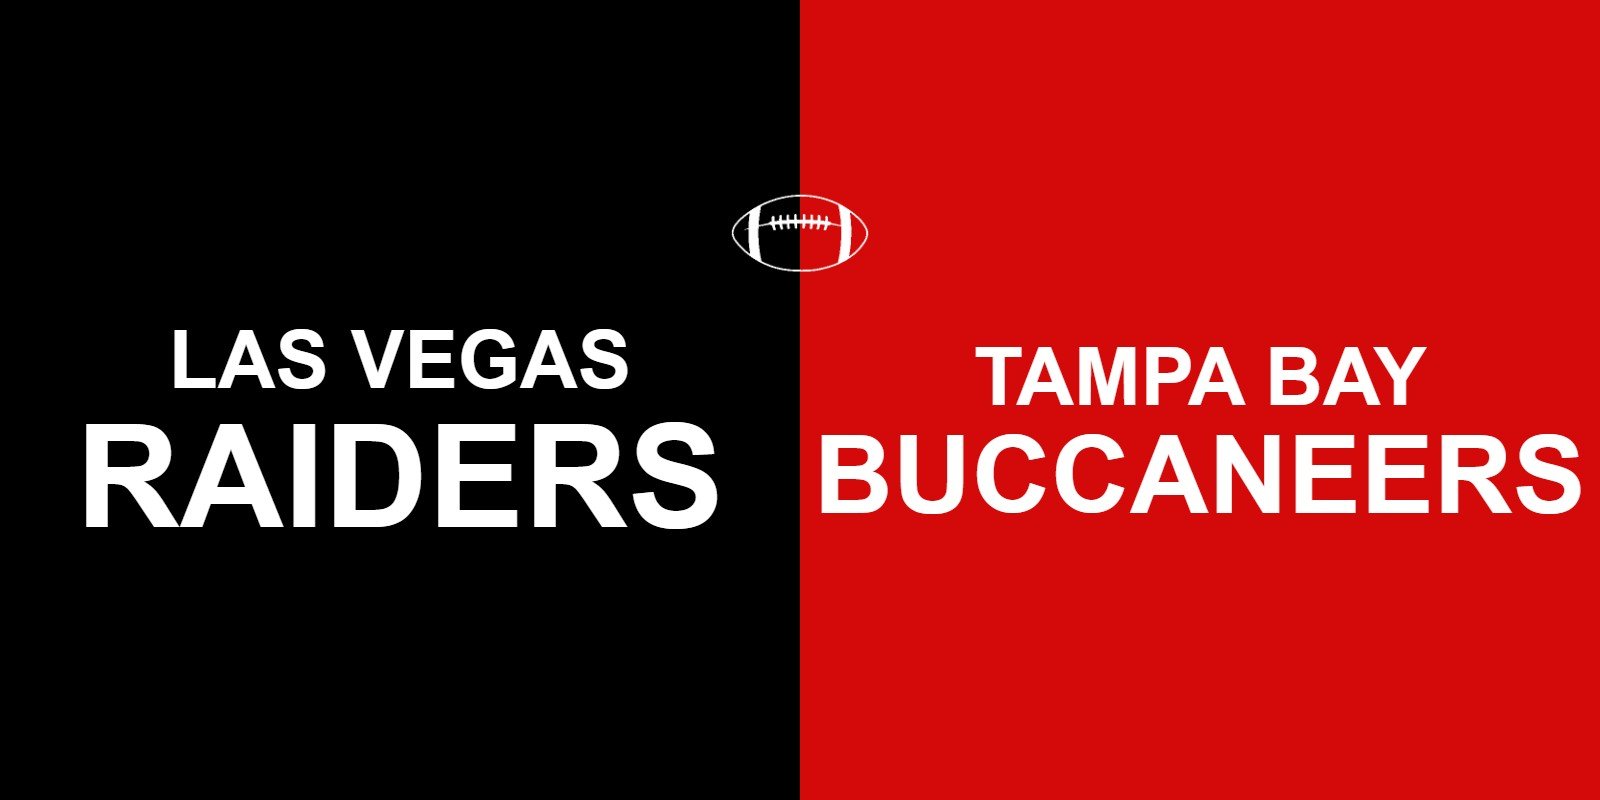 Raiders vs Buccaneers